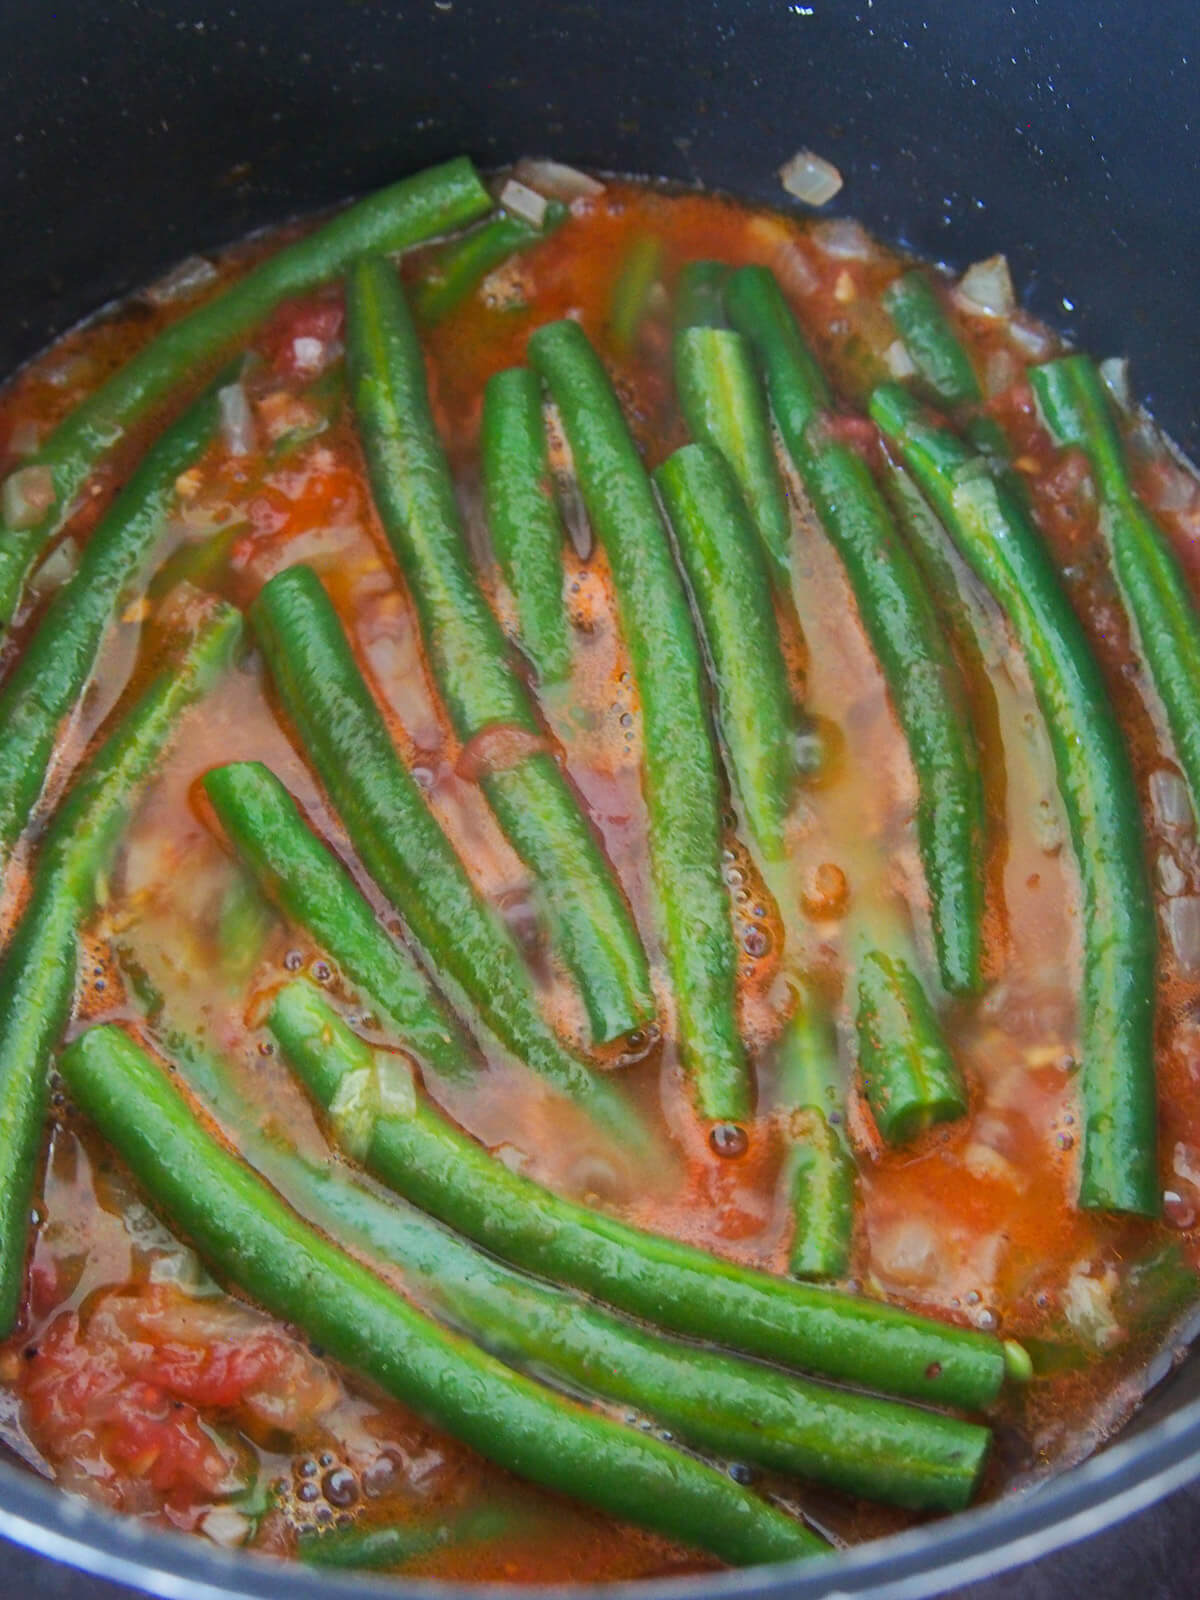 green beans simmering in tomato-oil sauce